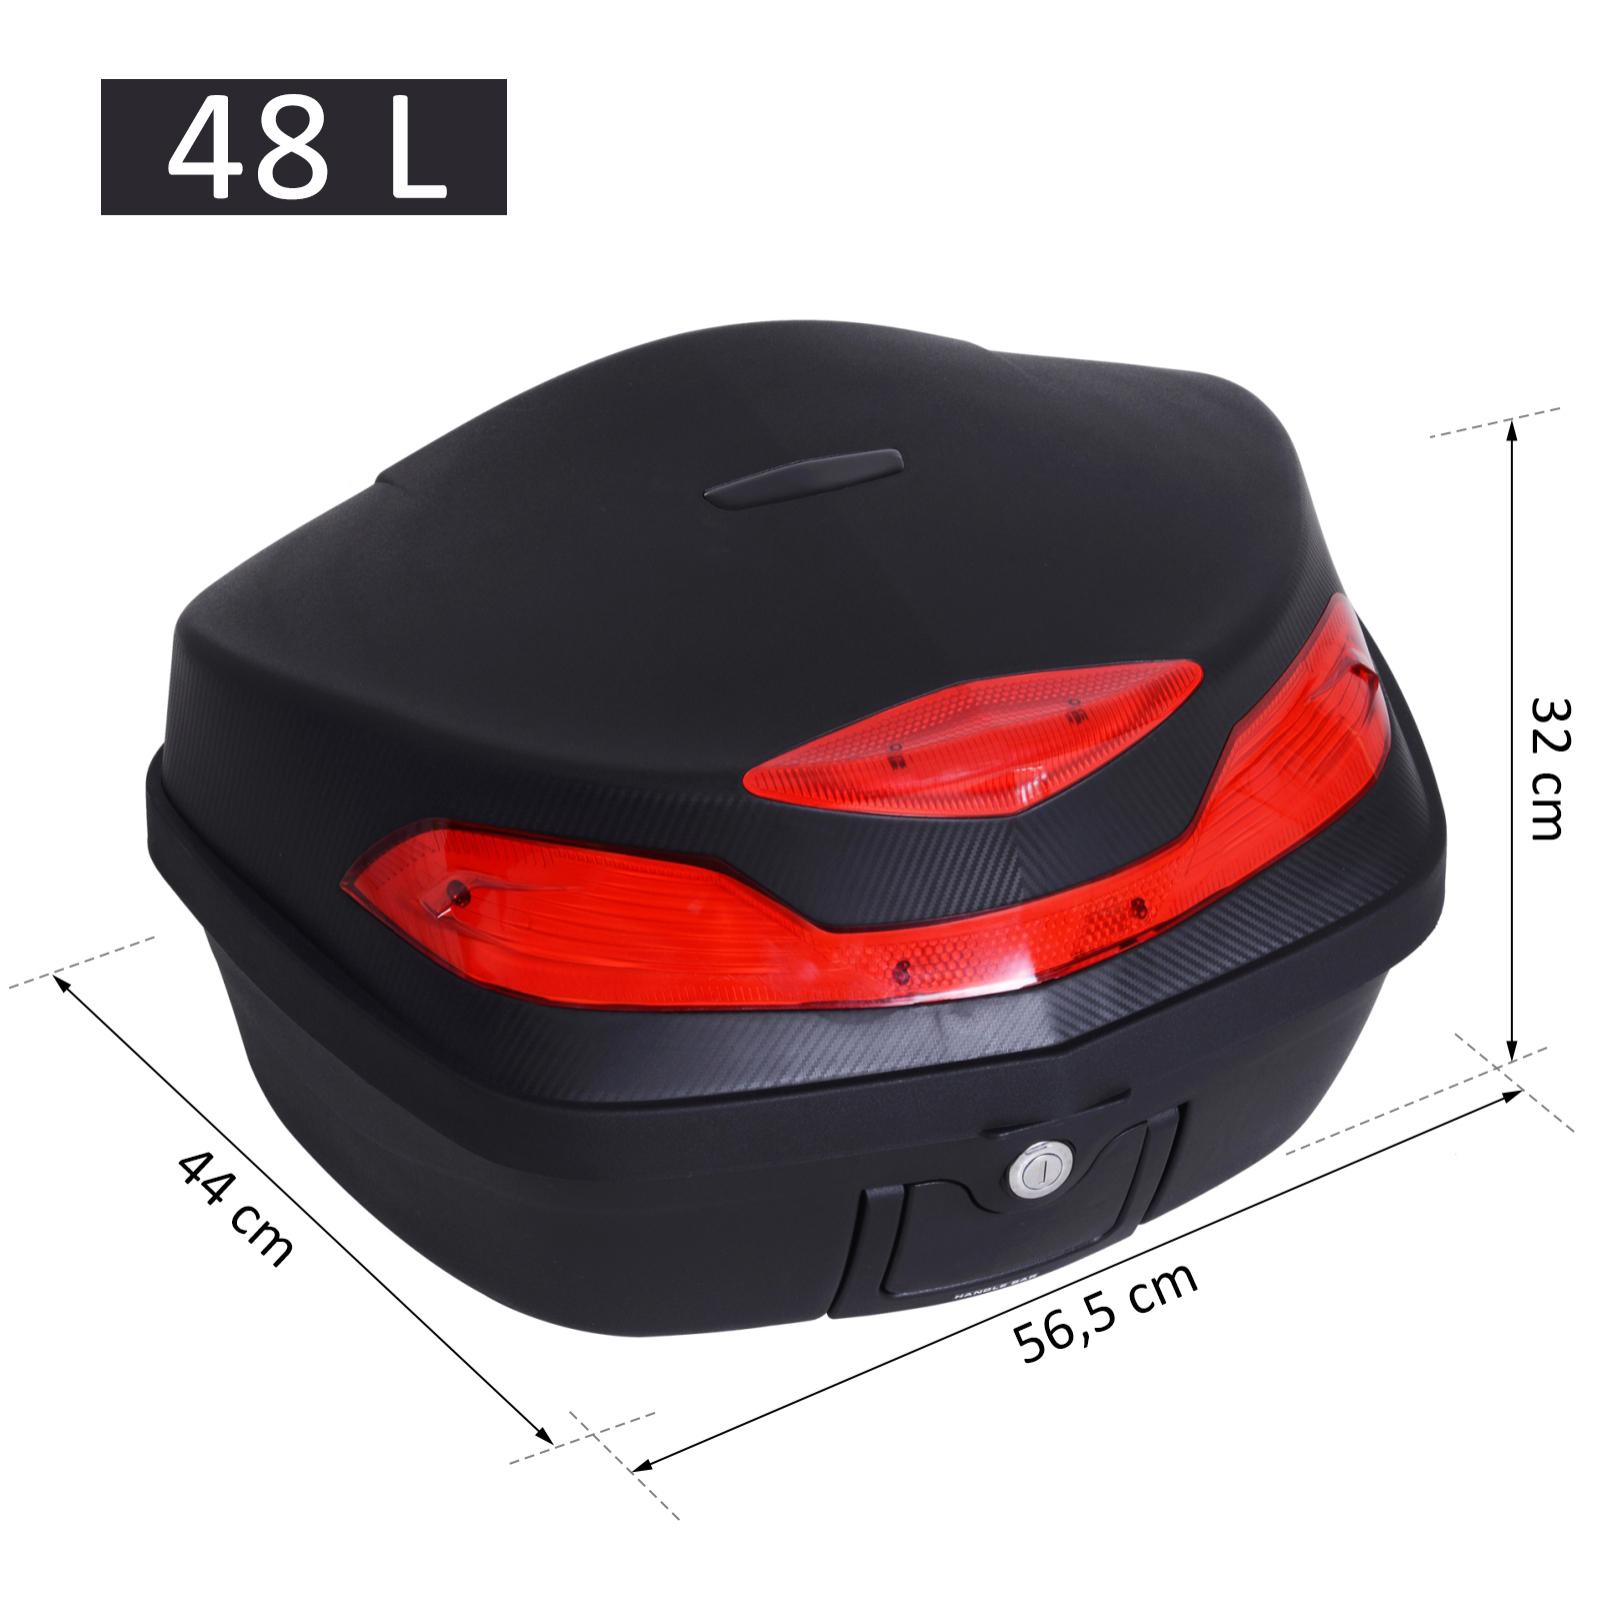 Baúl Moto Universal 48L + Llaves y Accesorios Equipaje Caja de Moto Topcase